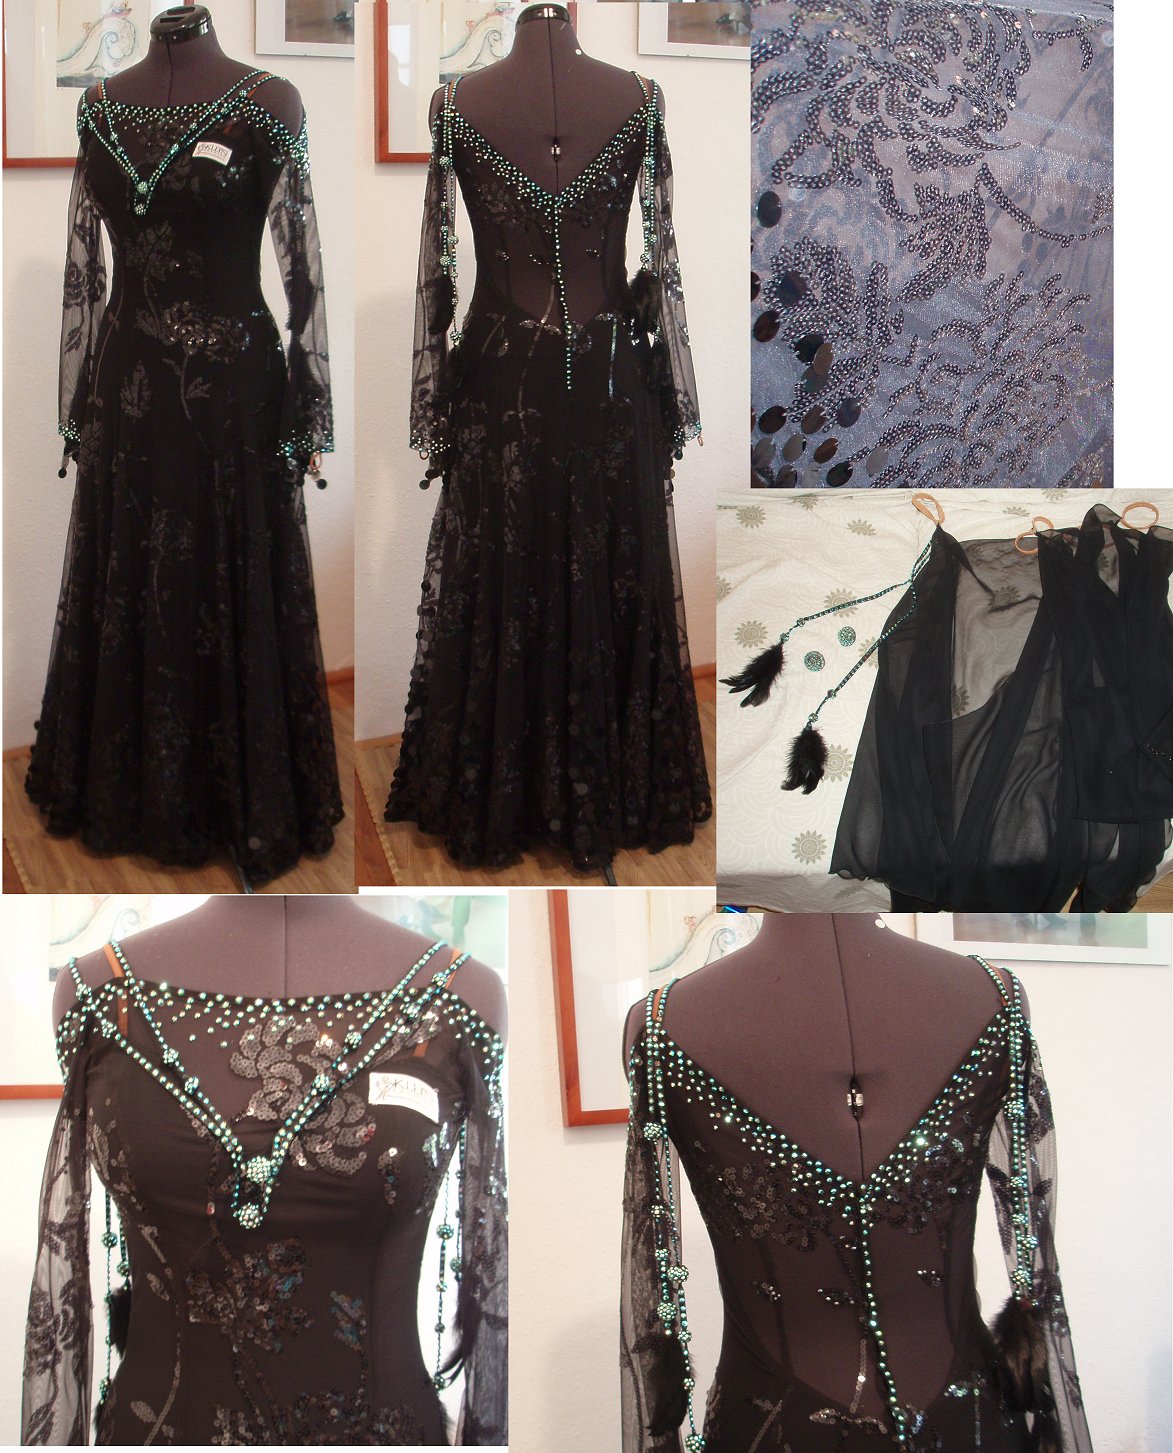 クリスティーネ・クライン・ファッション制作！スパンコール刺繍が美しい黒のモダンドレス | Atelier Casablanca -ダンスドレス